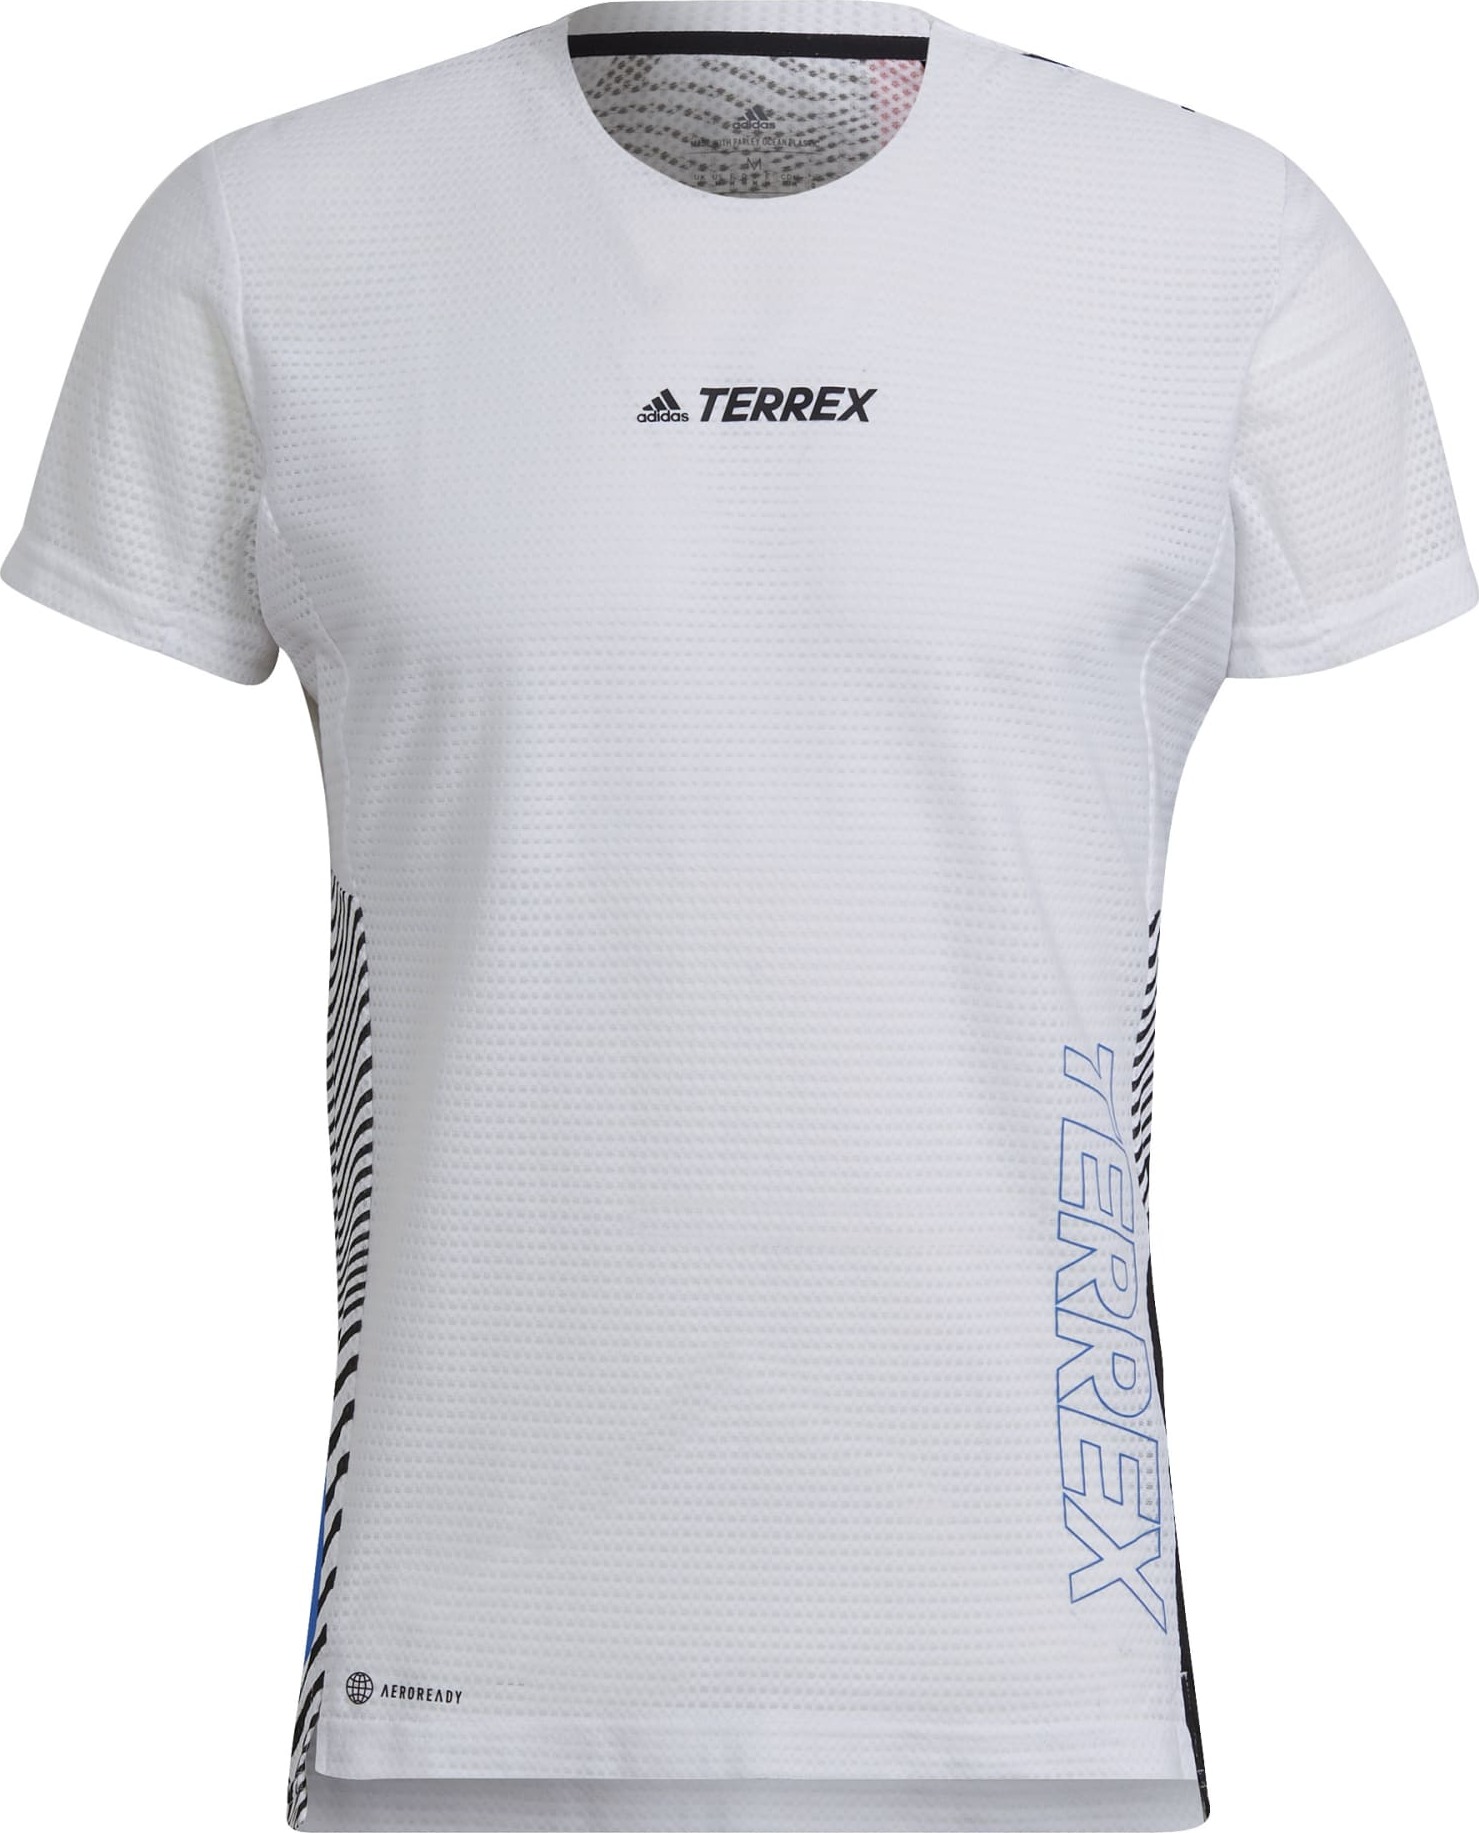 Adidas Men’s Terrex Agravic Pro Tee White